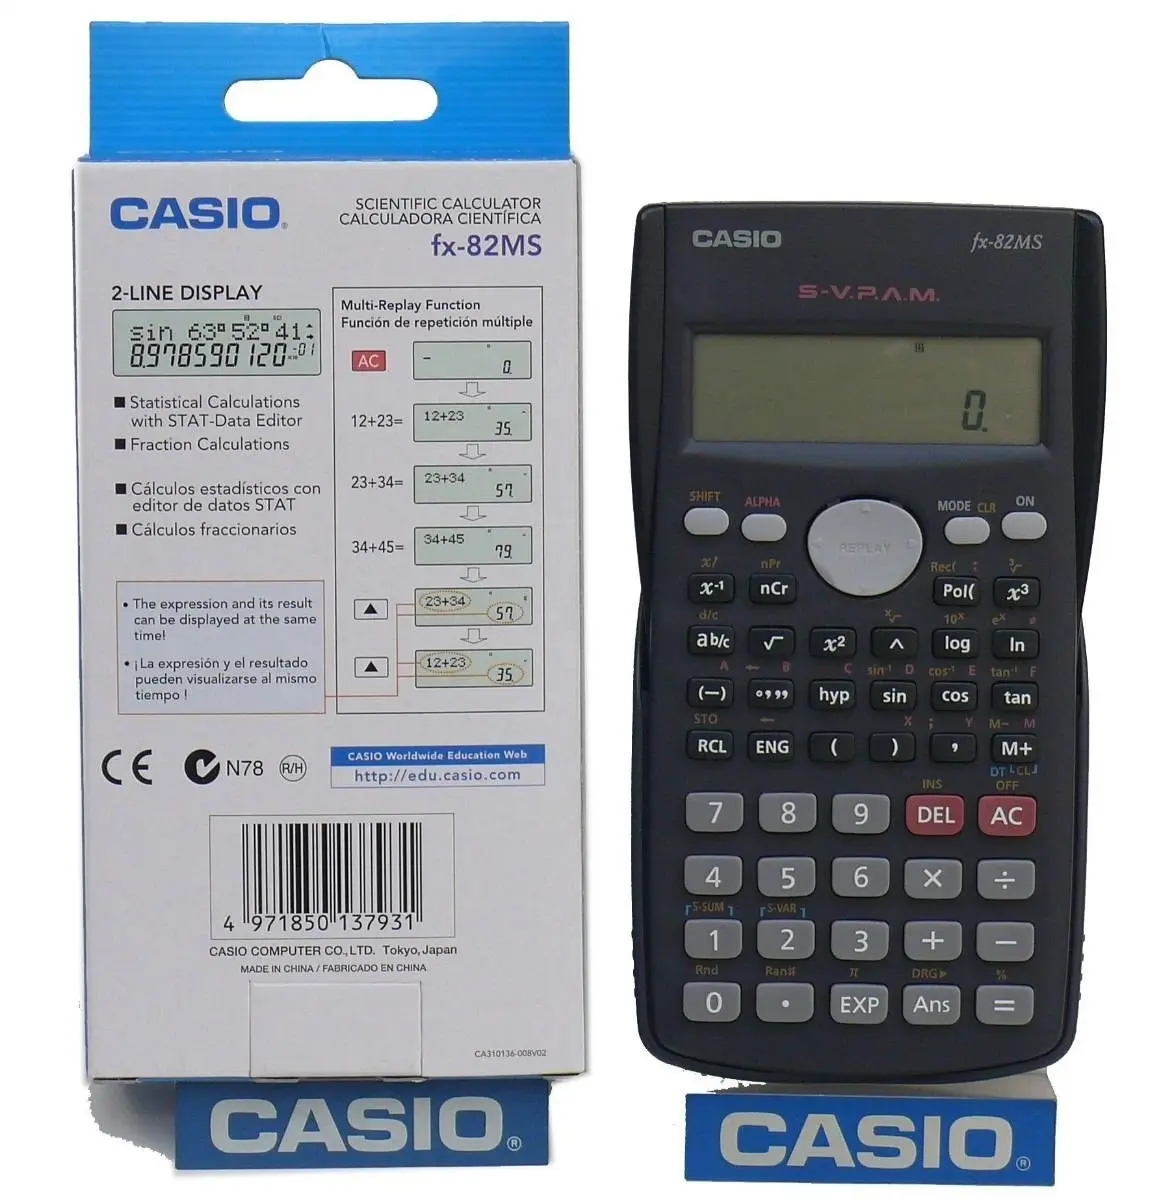 baterias calculadora cientifica - Qué pilas usa calculadora casio